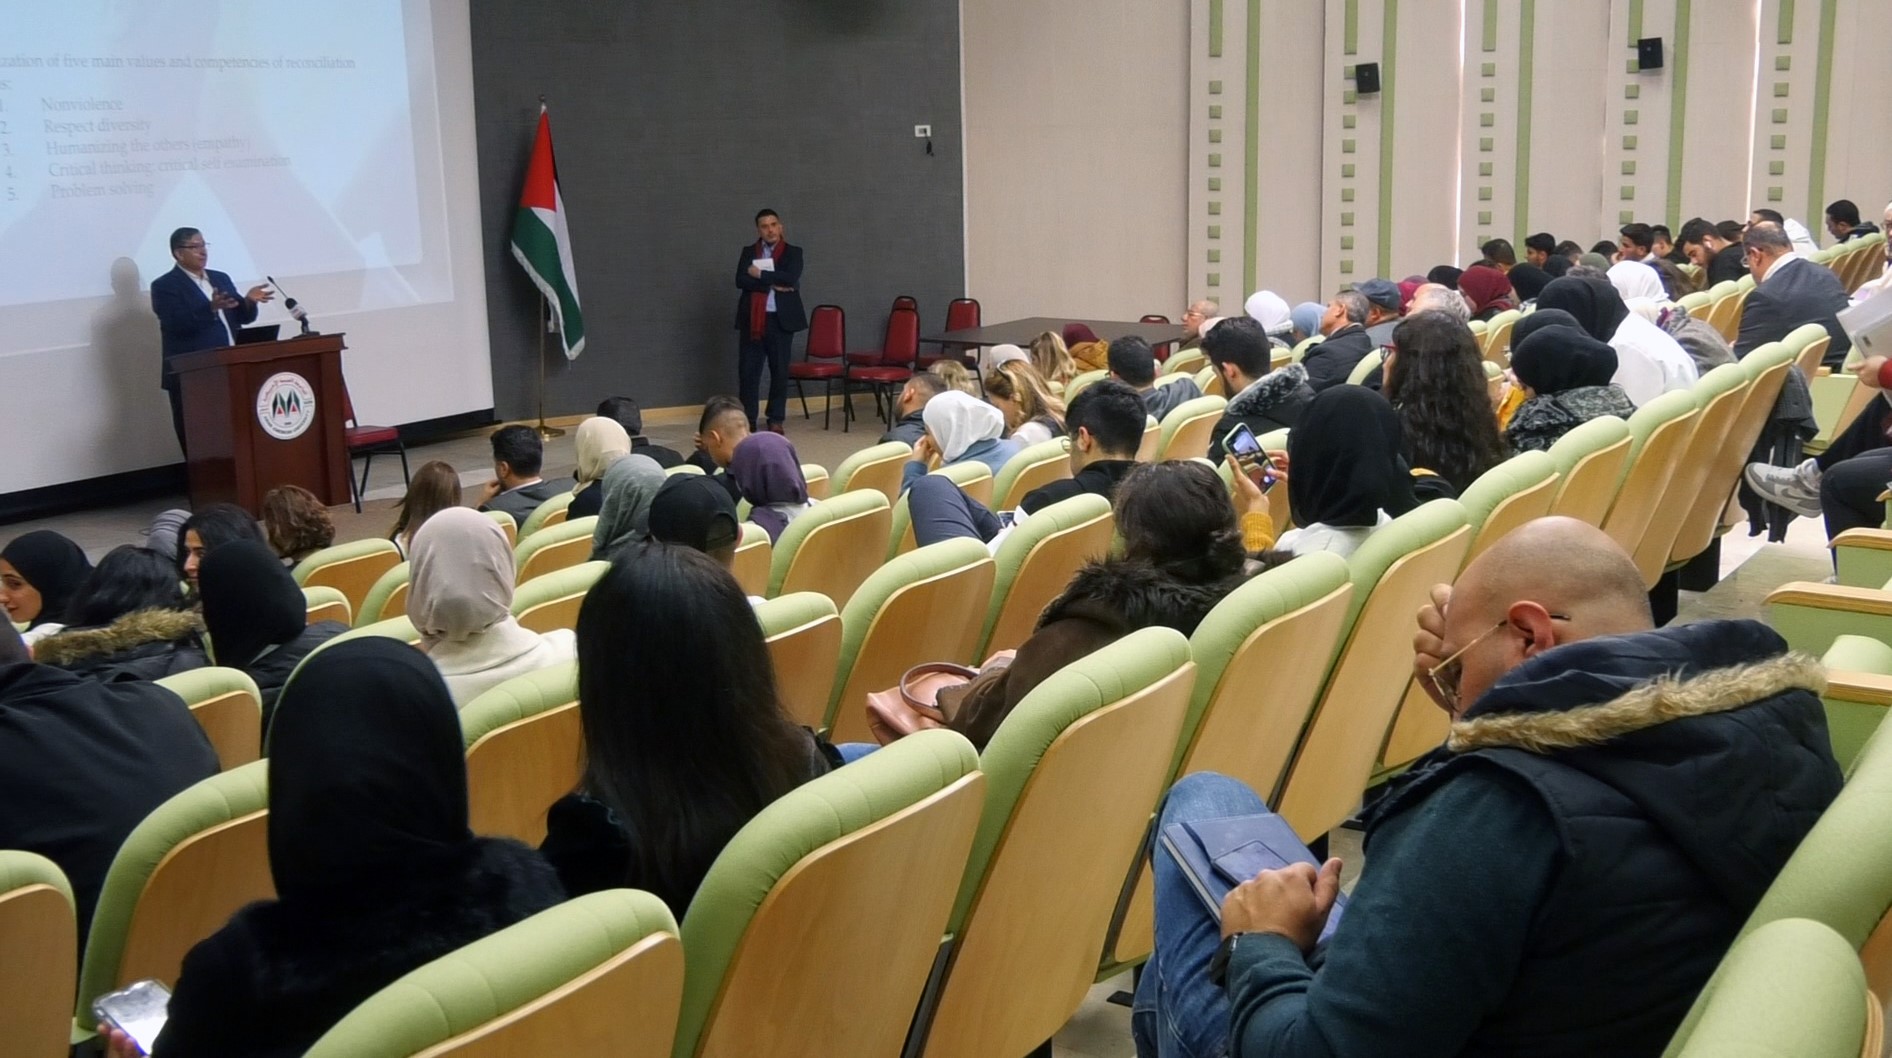 الجامعة العربية الأمريكية تنظم ندوة بعنوان "بحوث التسامح والمصالحة في النظام التعليمي العربي"